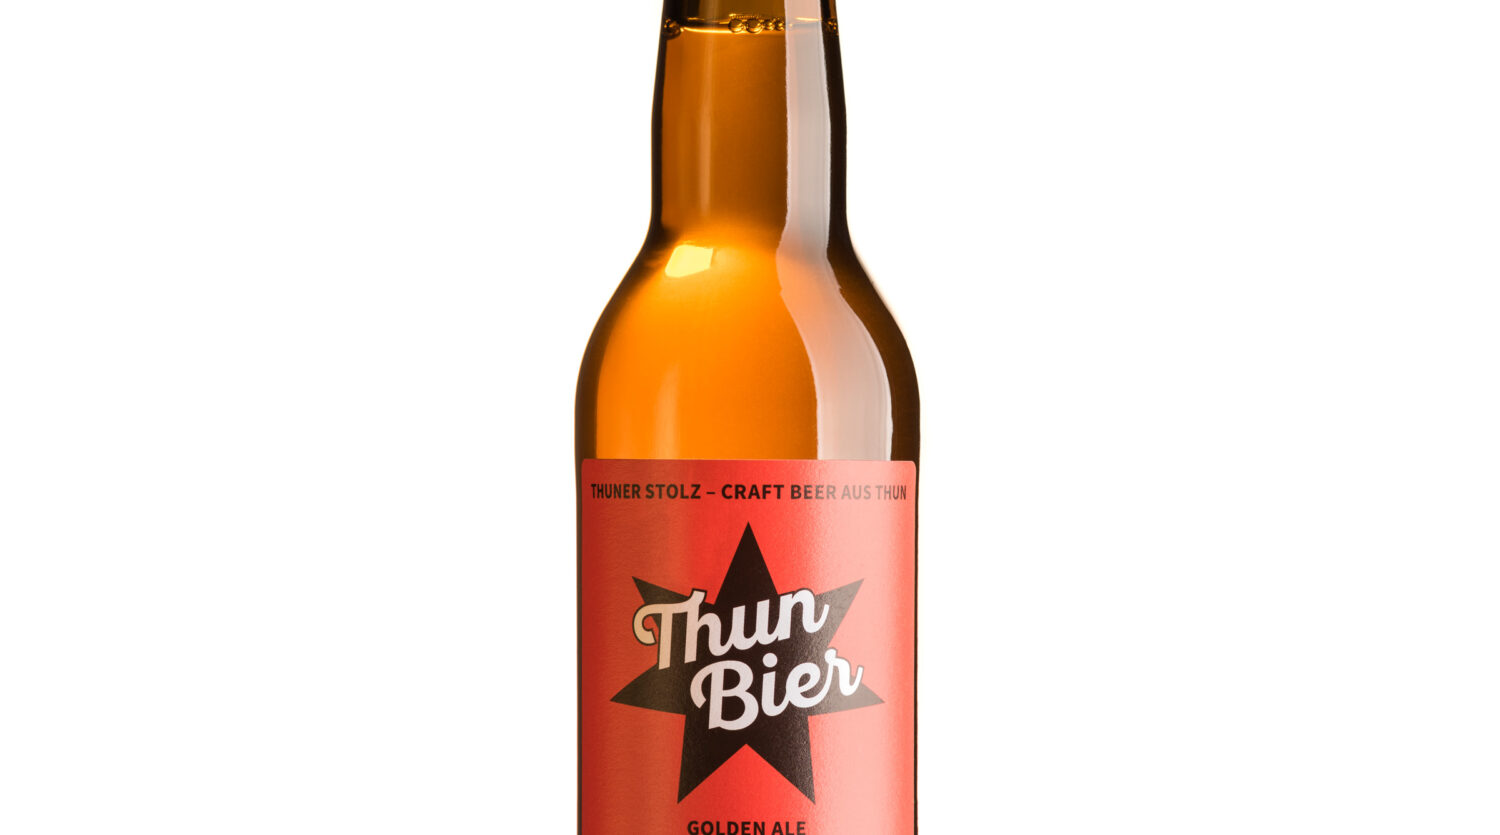 Brauerei Thun AG, Bier, Produktaufnahmen, Bierflaschen, Studiofotografie, David Schweizer